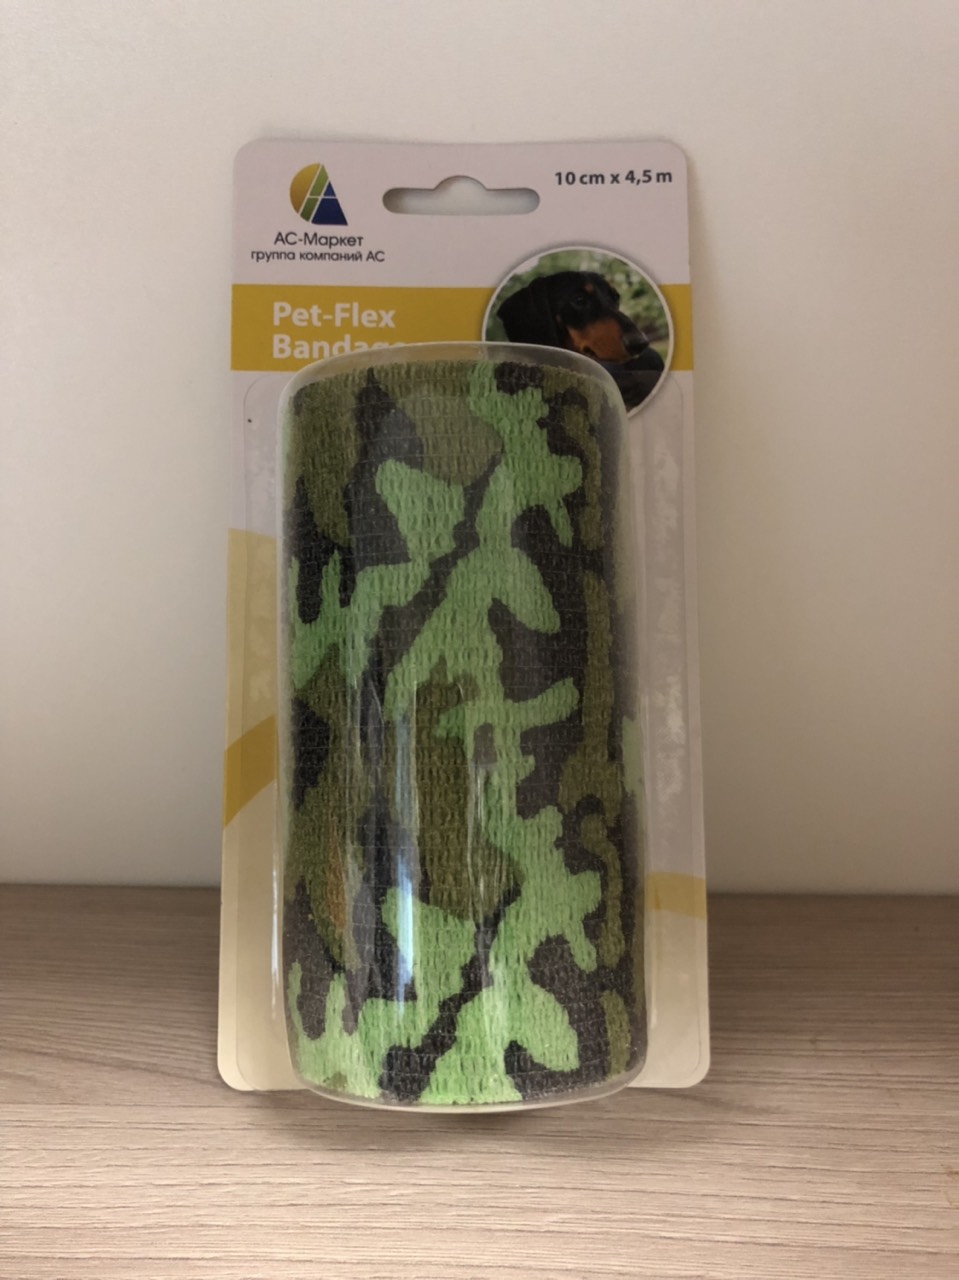 Бандаж Bandage самофиксирующийся 10 см/Pet-Flex 4,5 м ветаптека  ИппоВет (IppoVet)